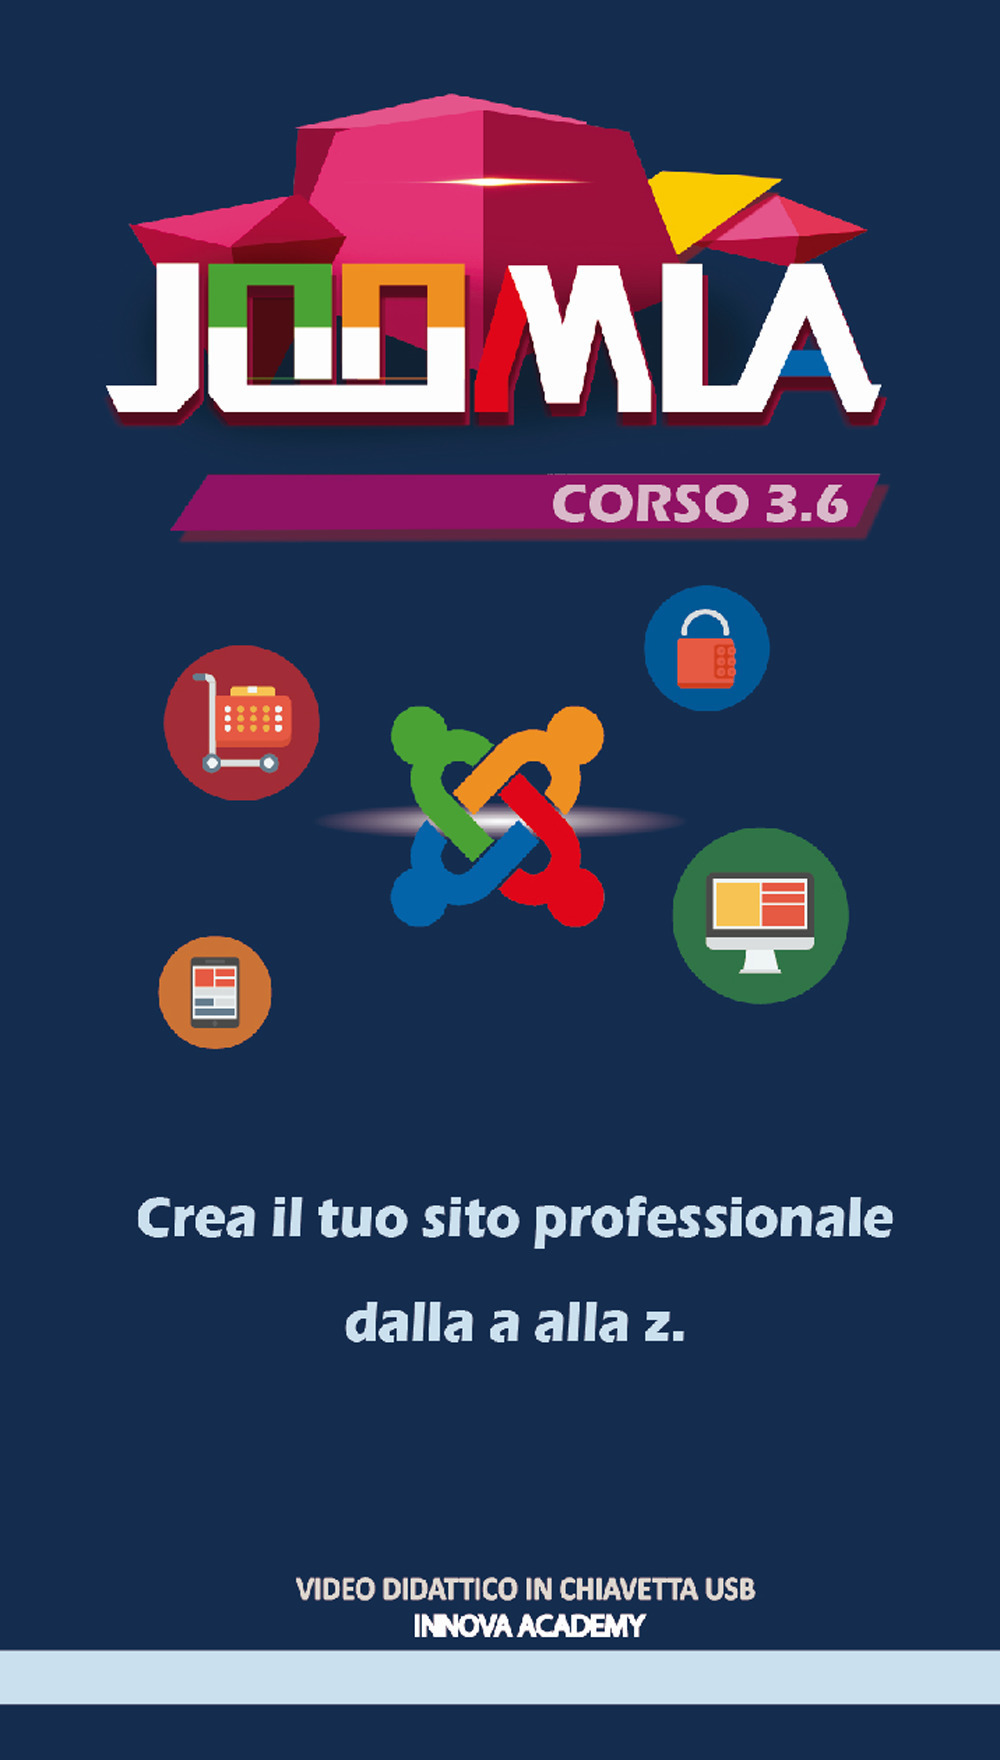 Image of Joomla. Corso 3.6. Crea il tuo sito professionale dalla a alla z. Video didattico in chiavetta usb